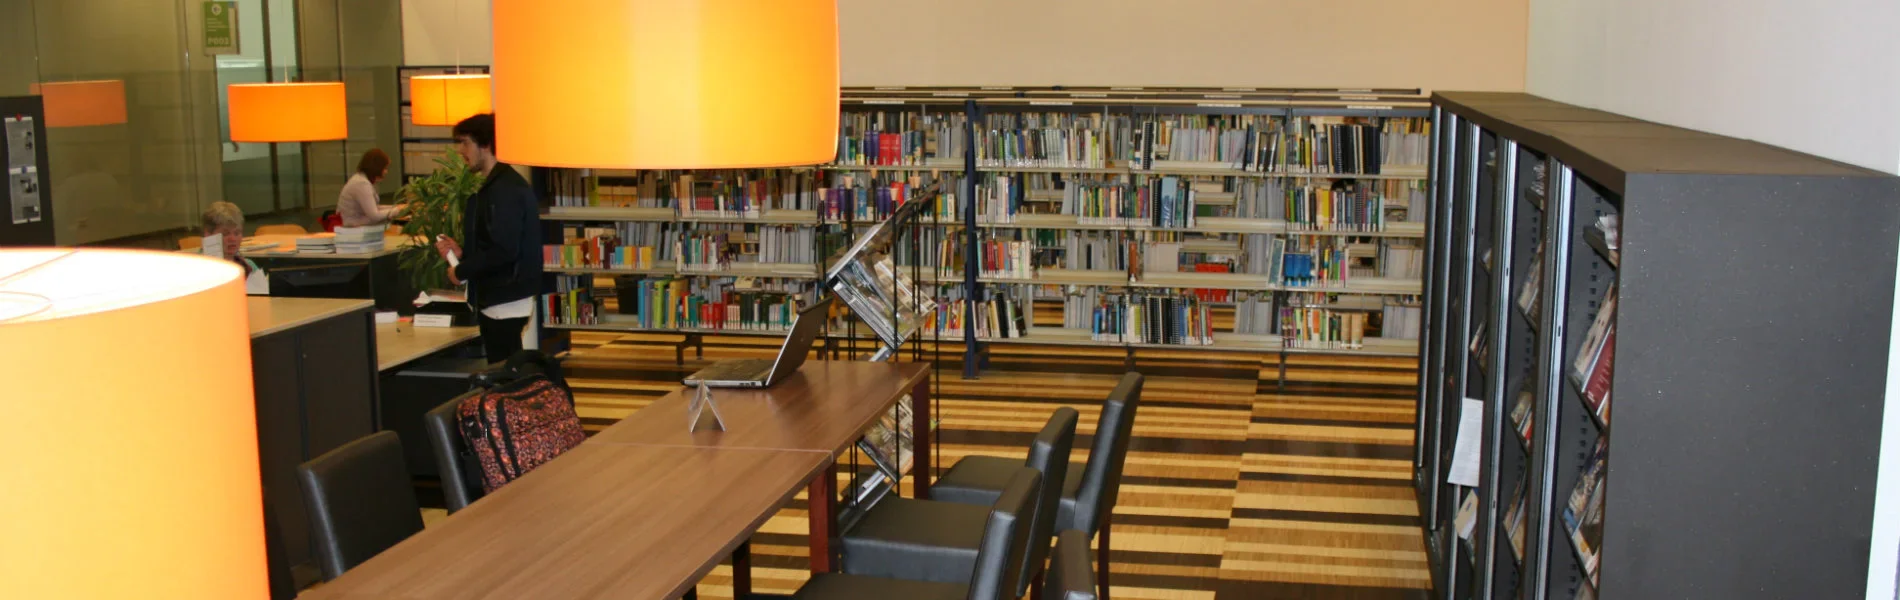 Bibliotheek Aeres Hogeschool Dronten